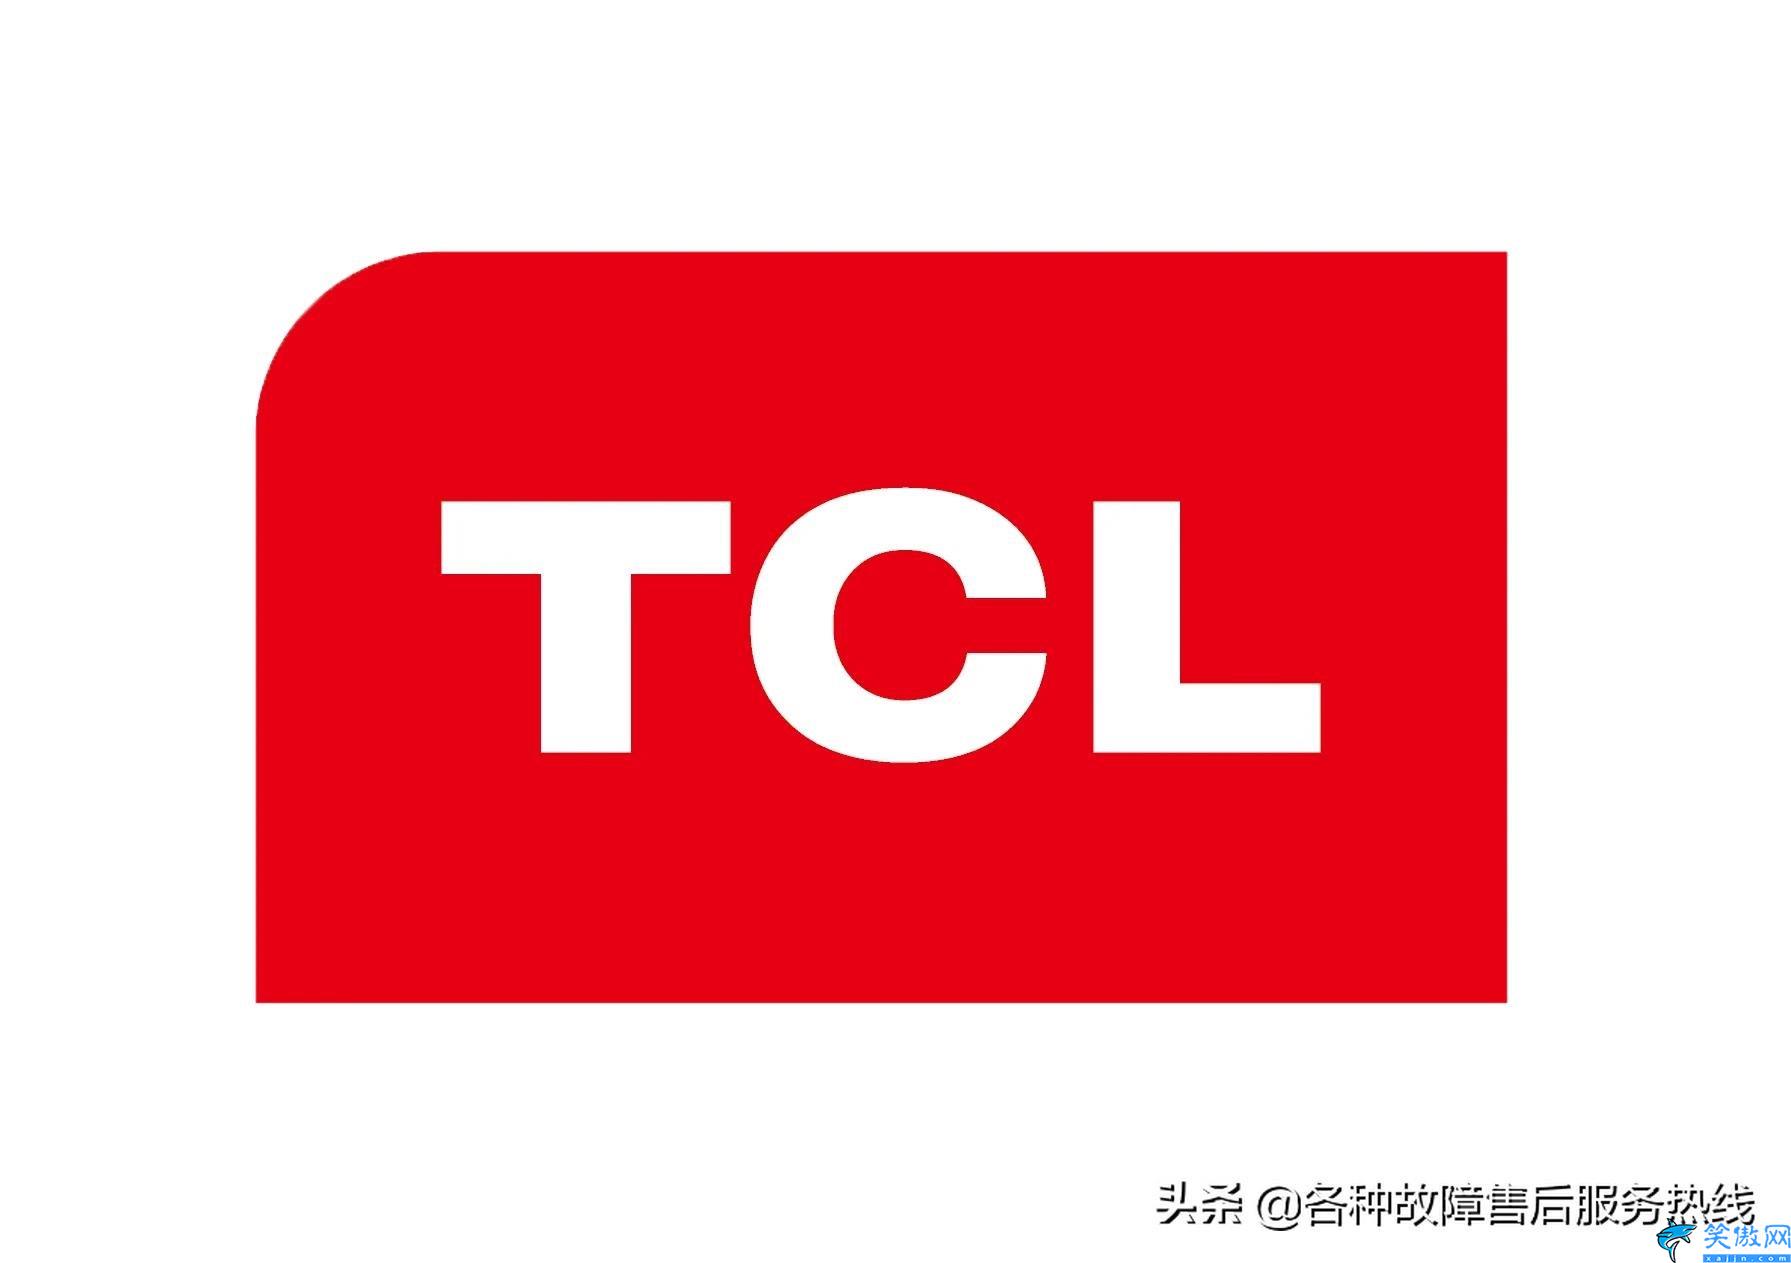 tcl电视全国售后维修点,tcl售后服务全国维修各区电话号码